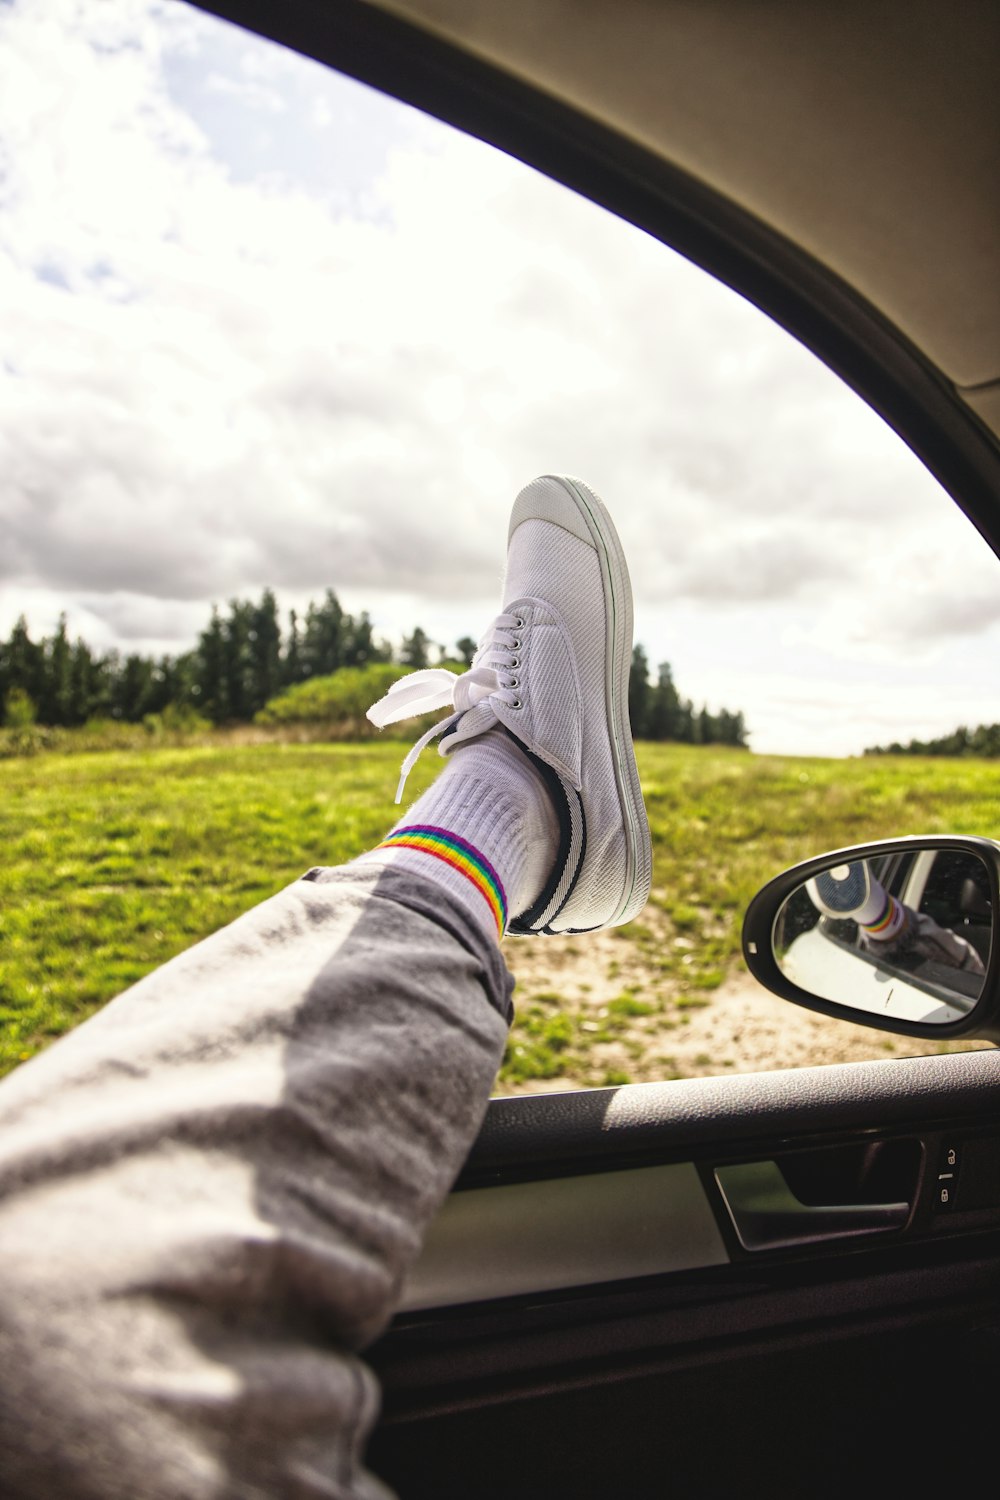 persona in pantaloni grigi e scarpe da ginnastica grigie seduta all'interno dell'auto durante il giorno